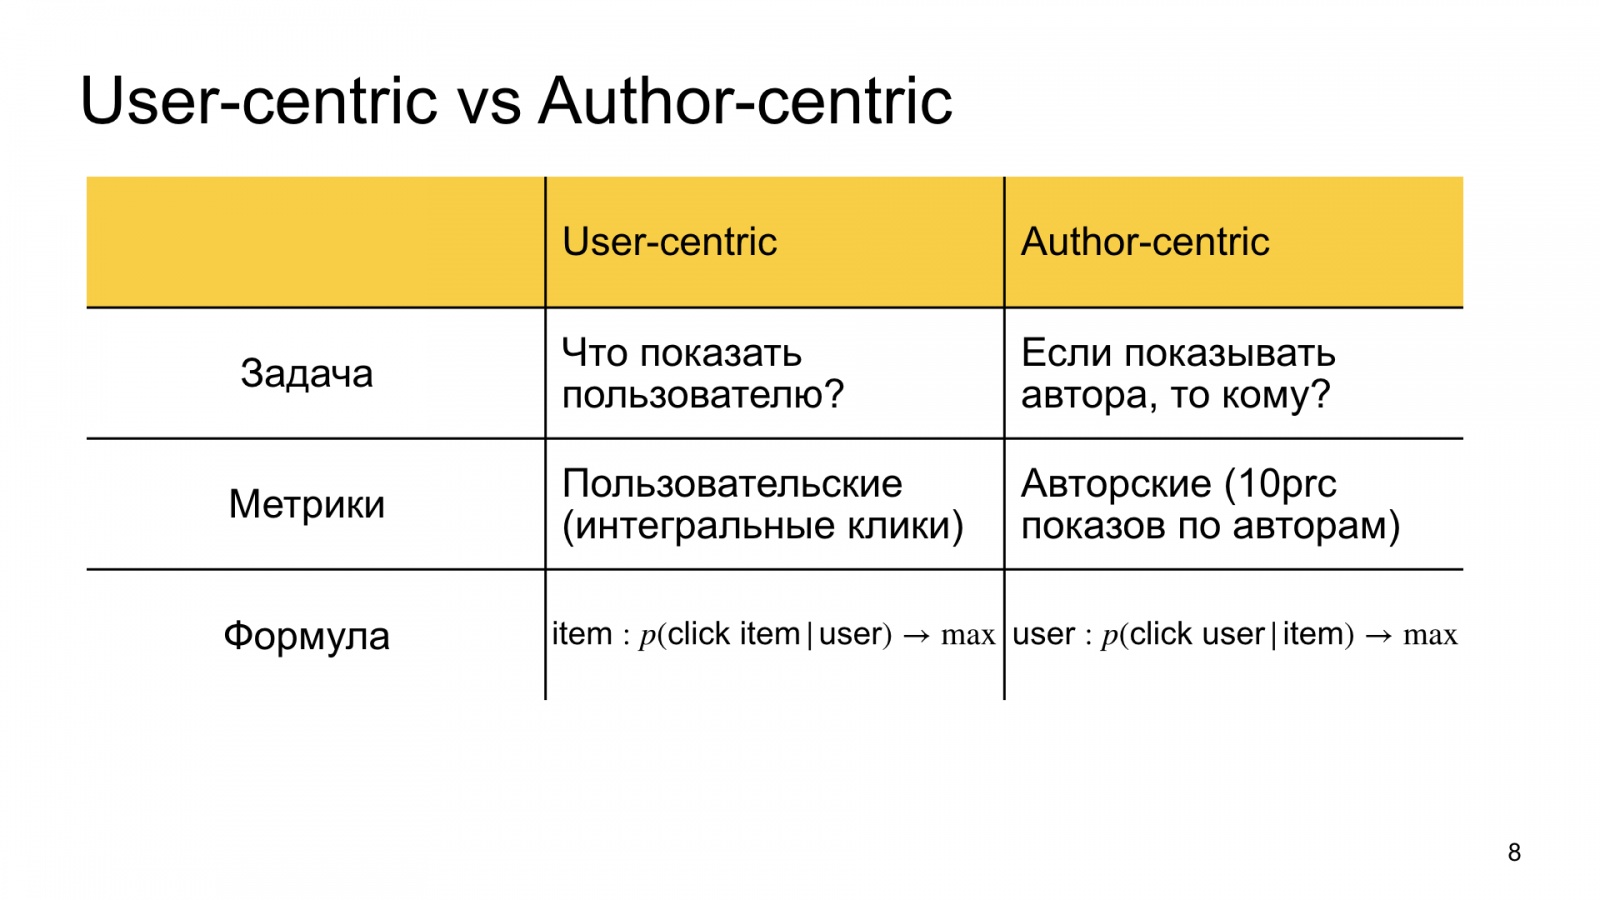 Автороцентричное ранжирование. Доклад Яндекса о поиске релевантной аудитории для авторов Дзена - 8